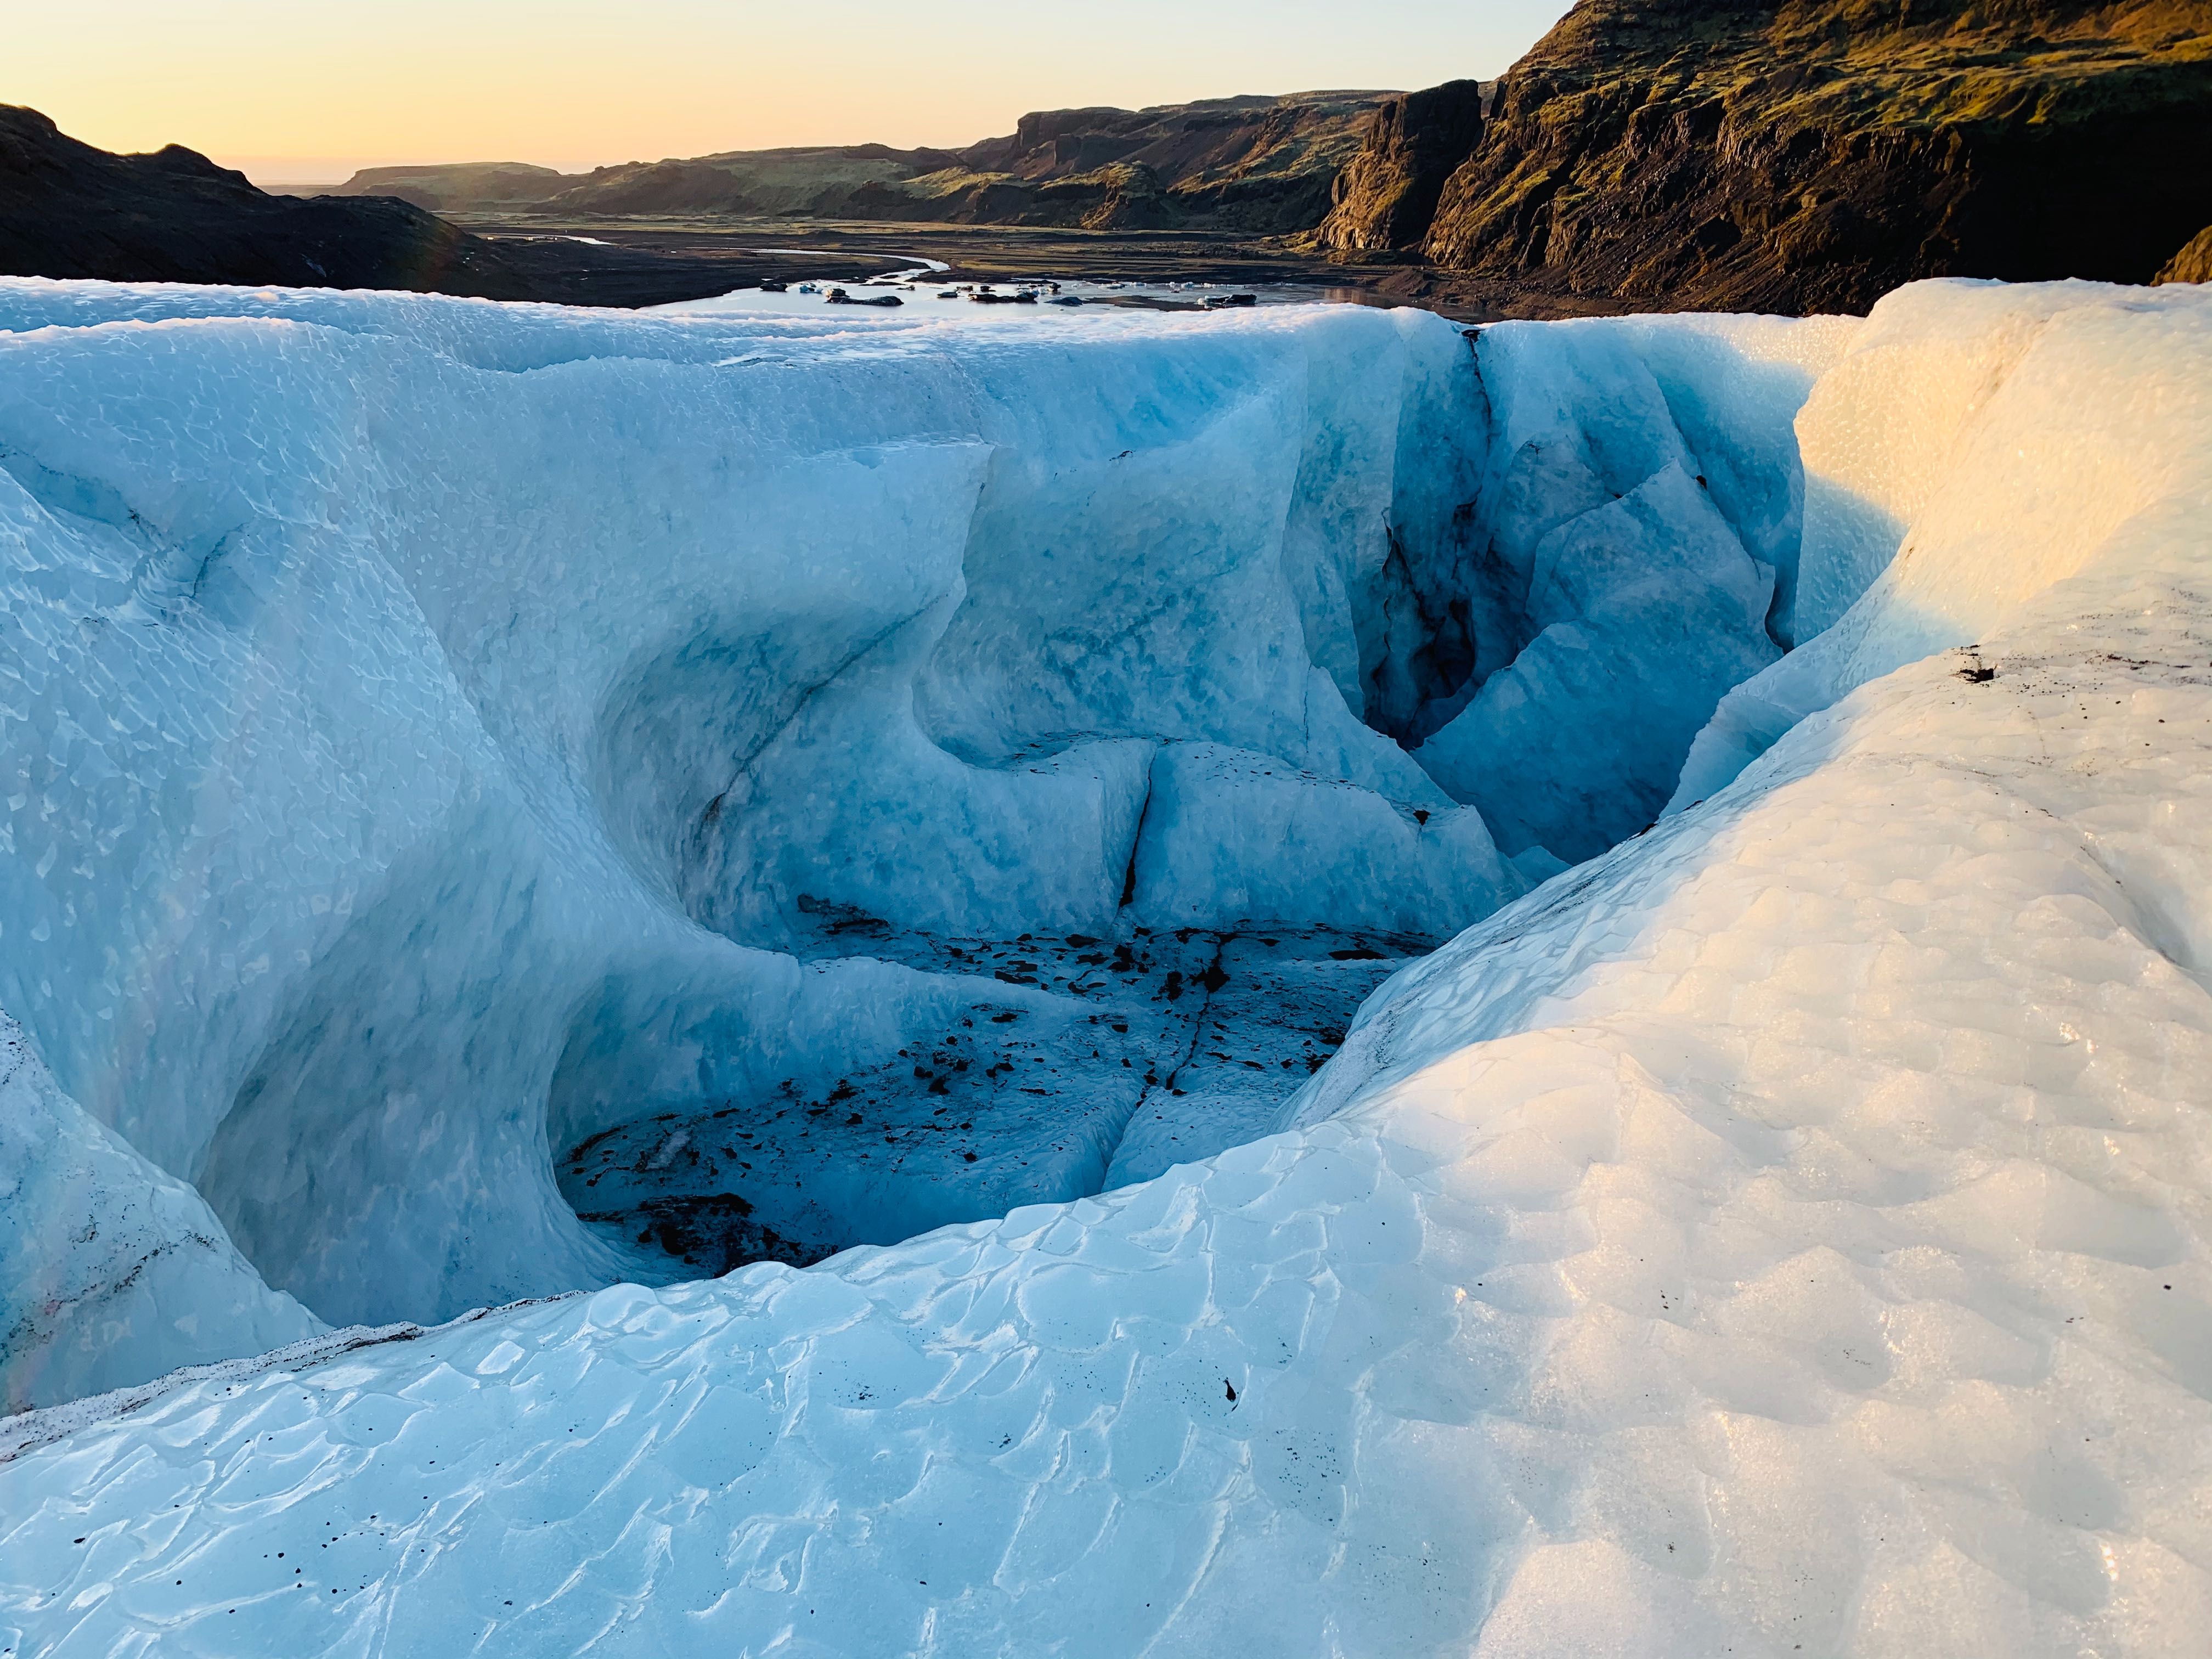 Gletscherwanderung auf dem Sólheimajökull | Moderat | Gui...